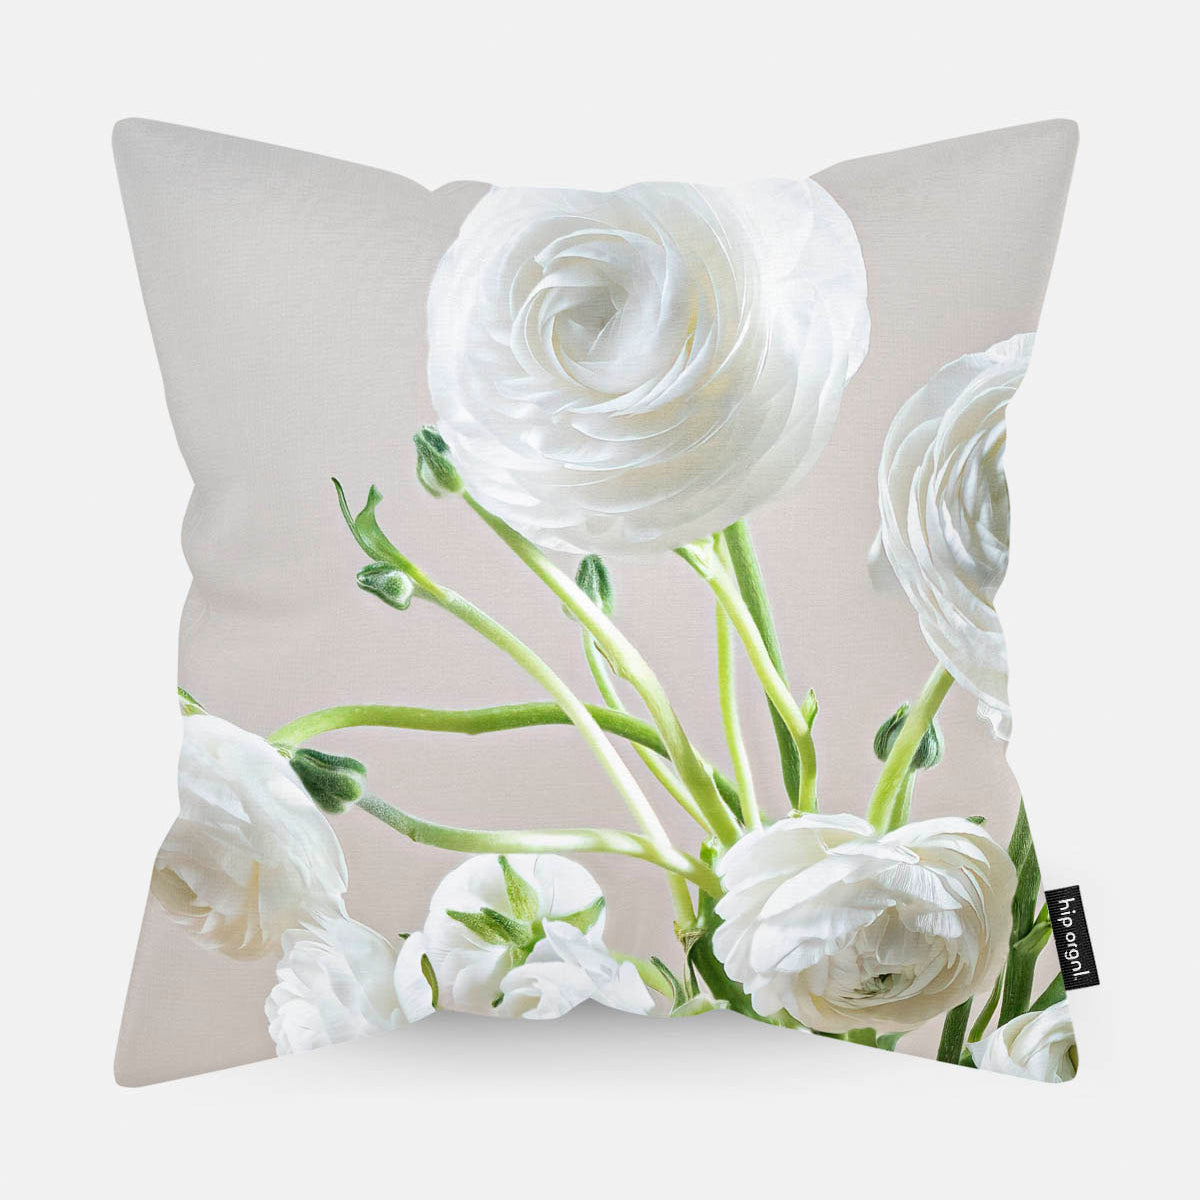 Sierkussen met witte bloemen met een lichte achtergrond